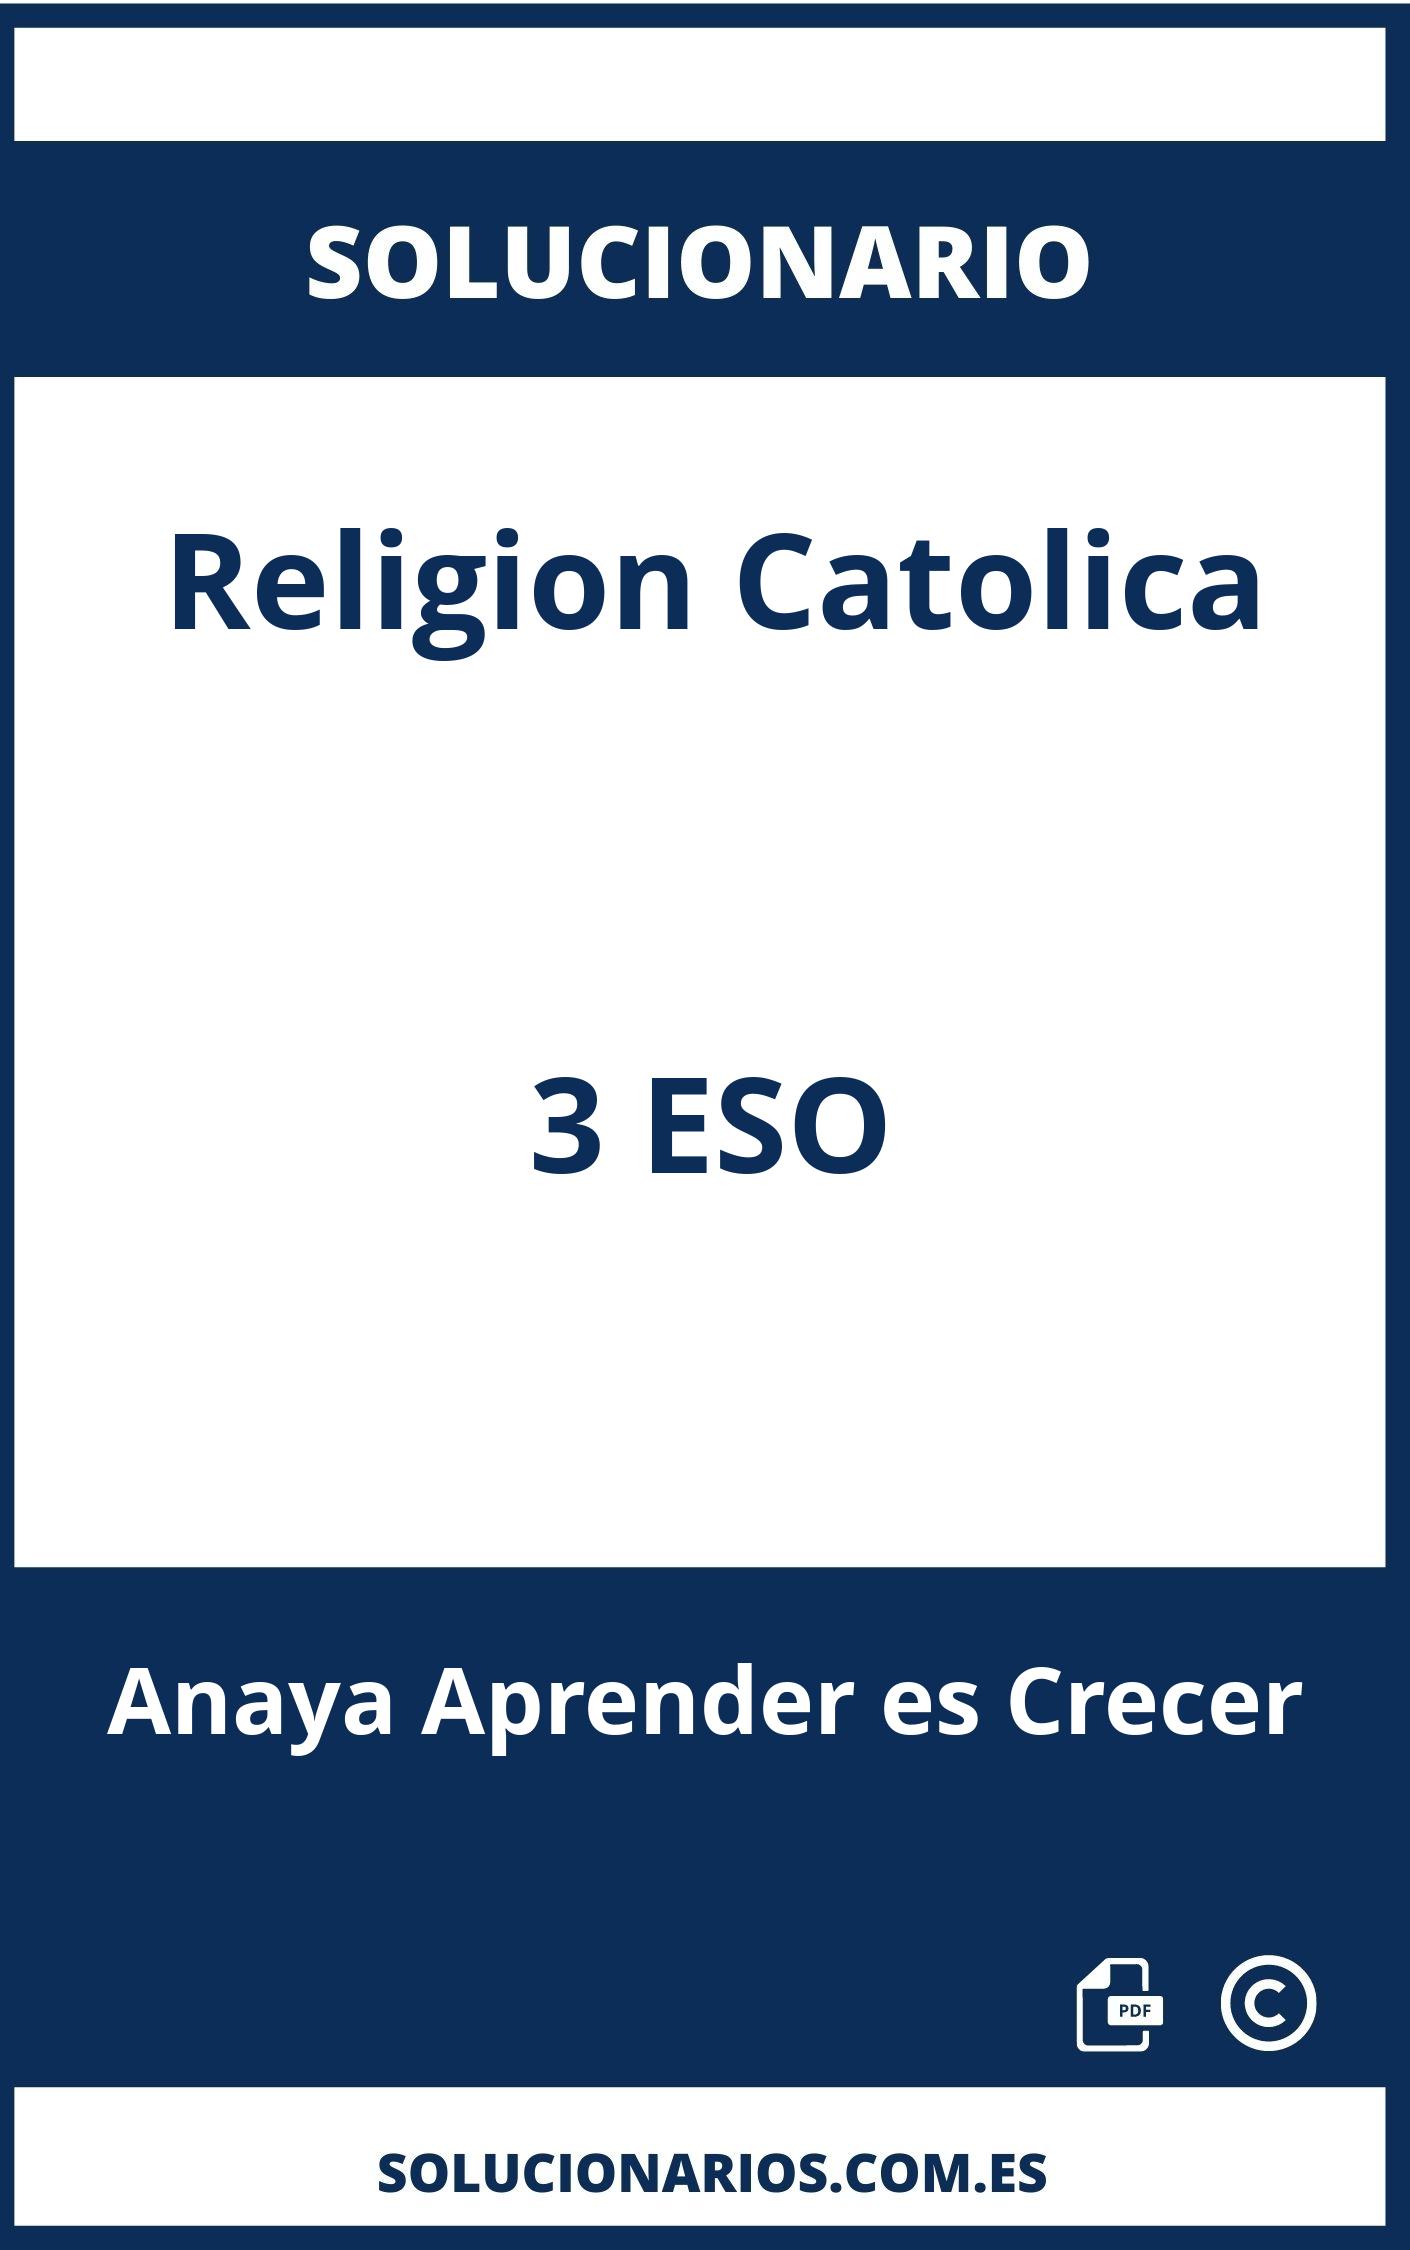 Solucionario Religion Catolica 3 ESO Anaya Aprender es Crecer